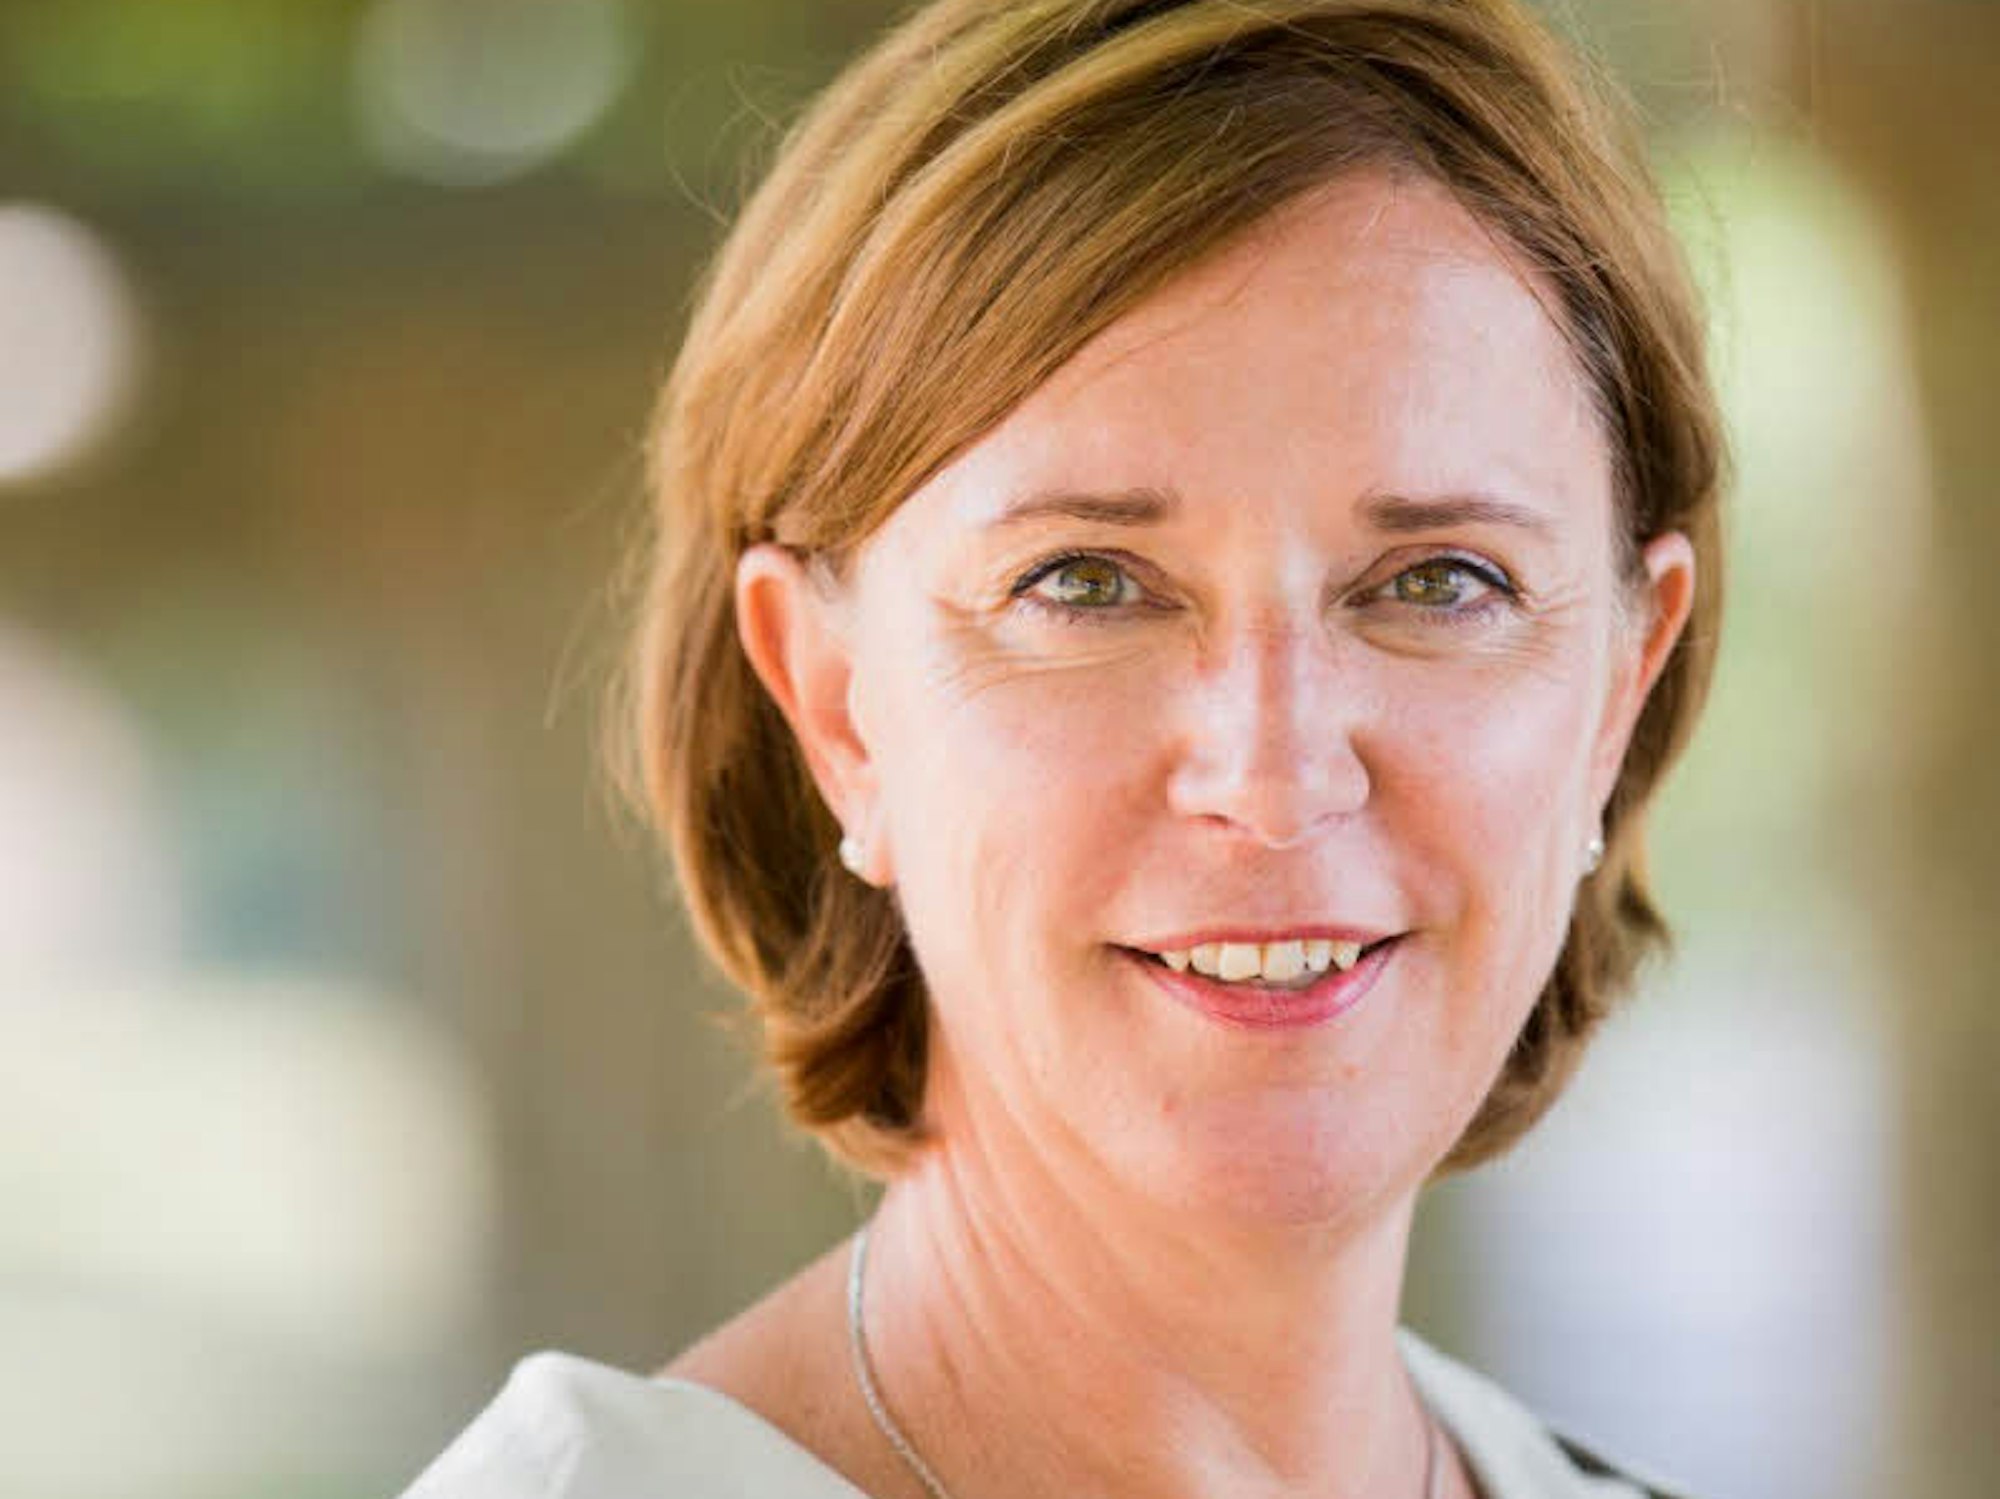 Yvonne Gebauerist Ministerin für Schule und Bildung des Landes NRW. 2019 will die FDP-Politikerin ein neues Konzept zur Gewaltprävention an den Schulen vorlegen.